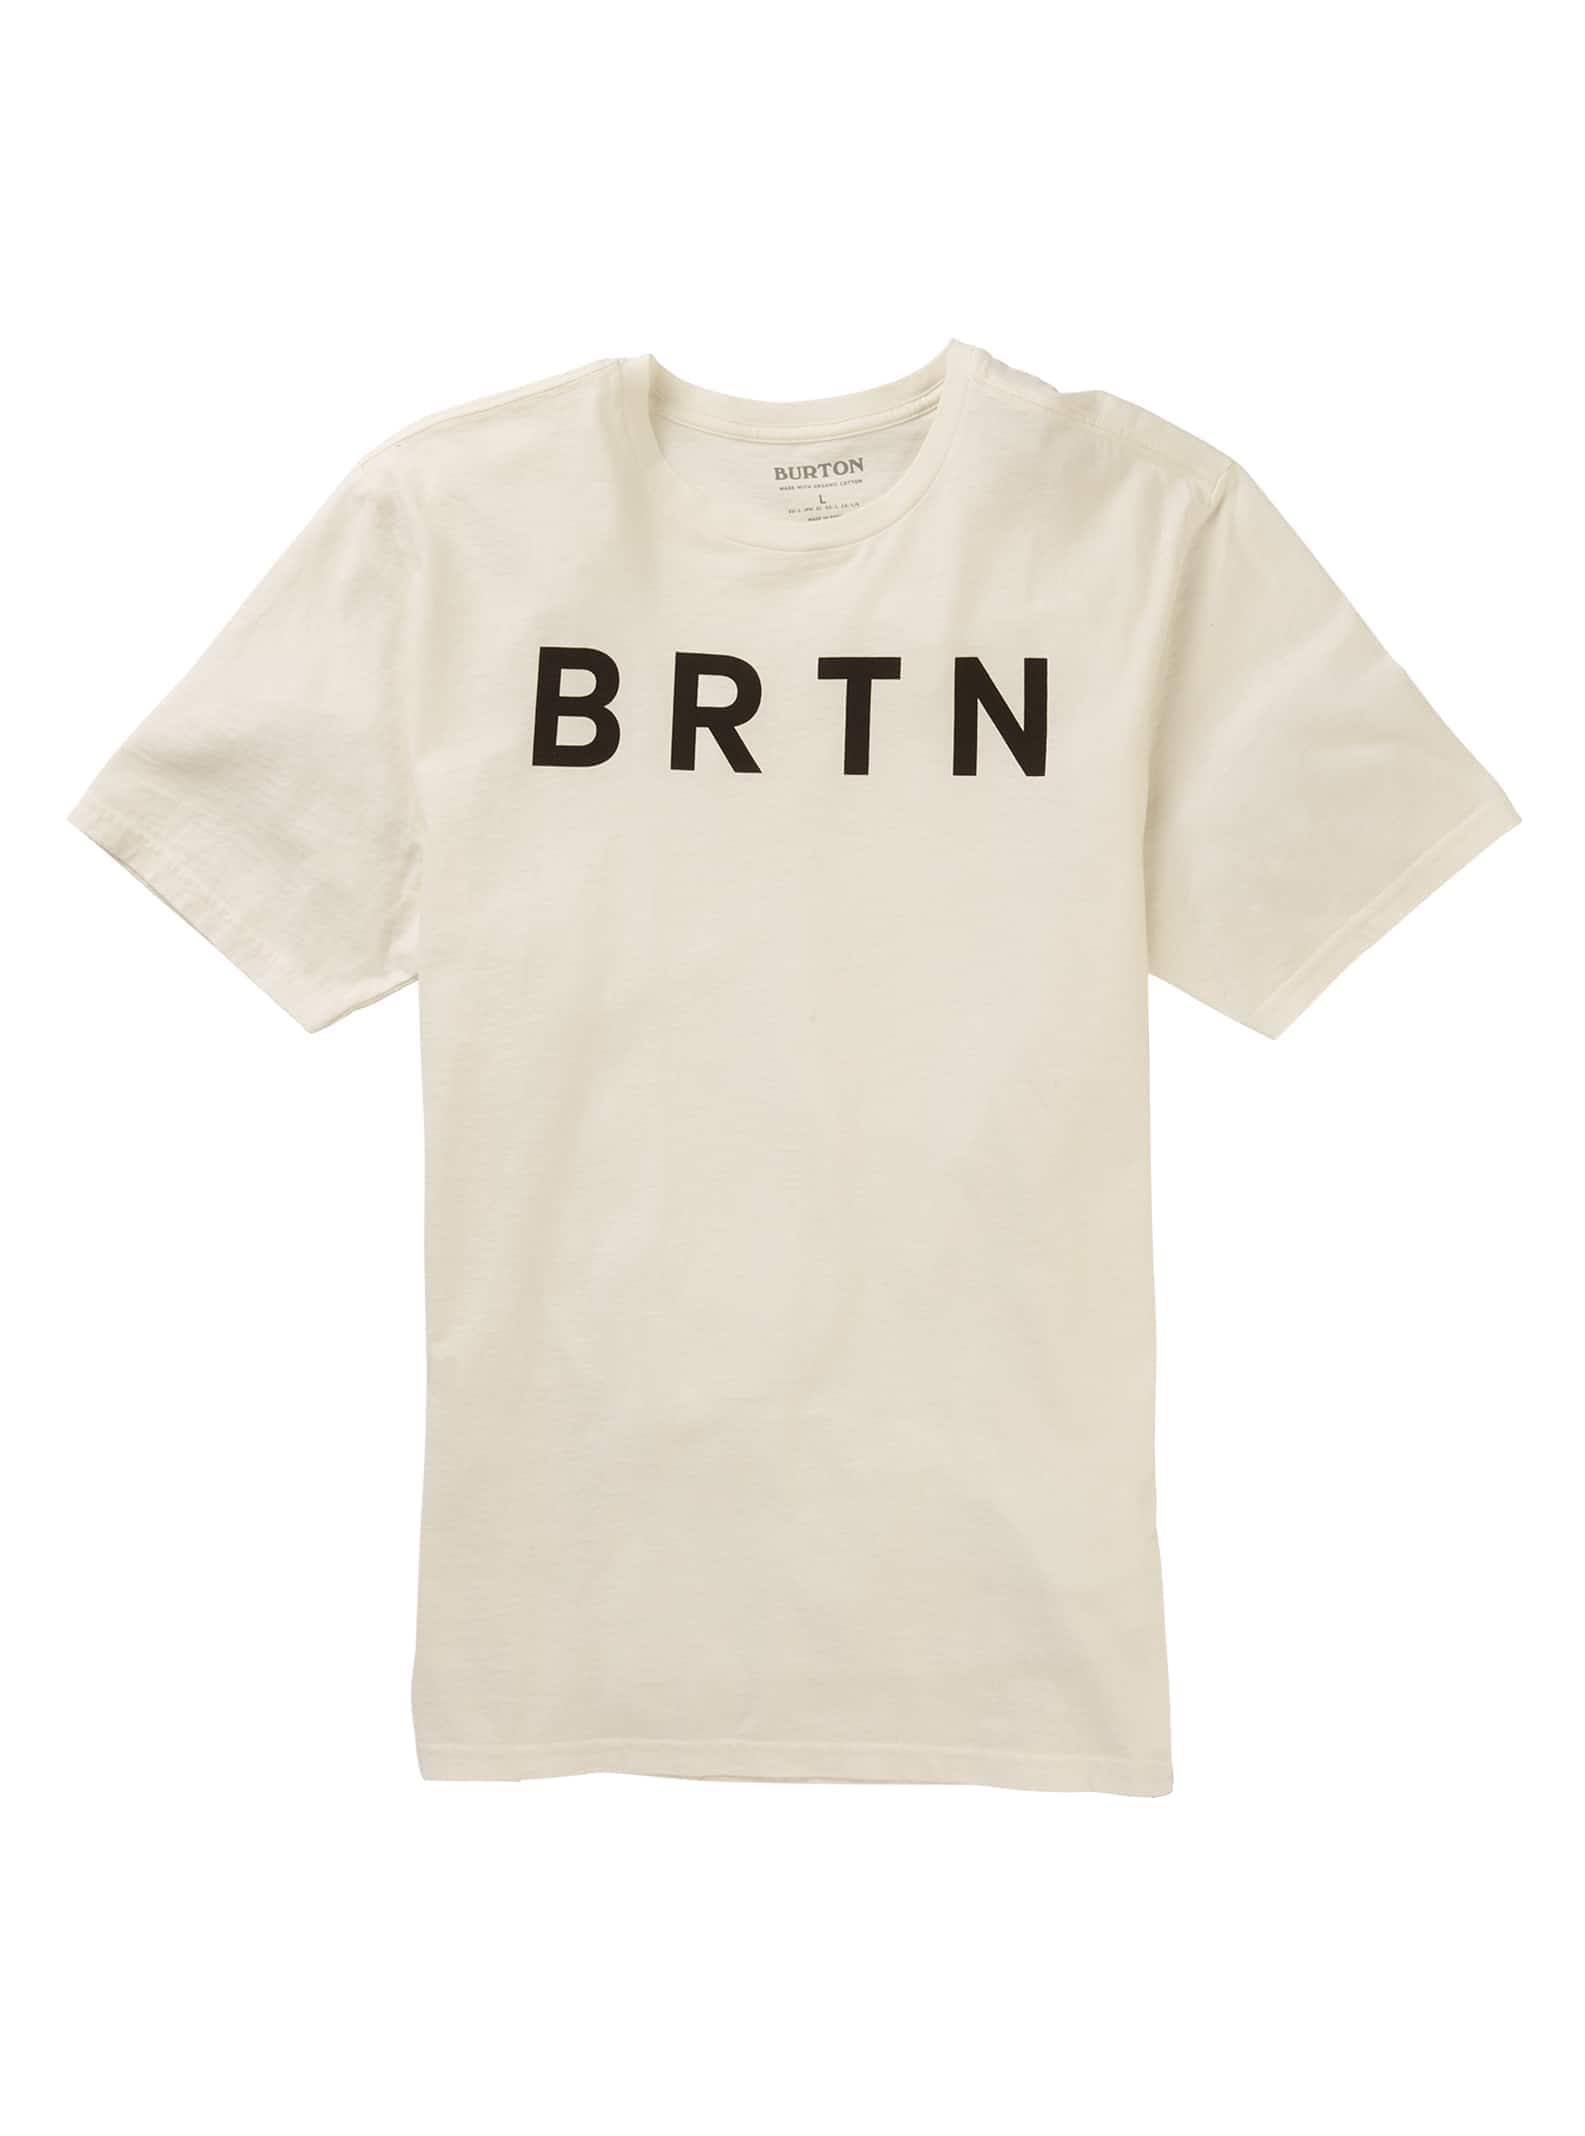 Burton - T-shirt à manches courtes BRTN, Stout White, L